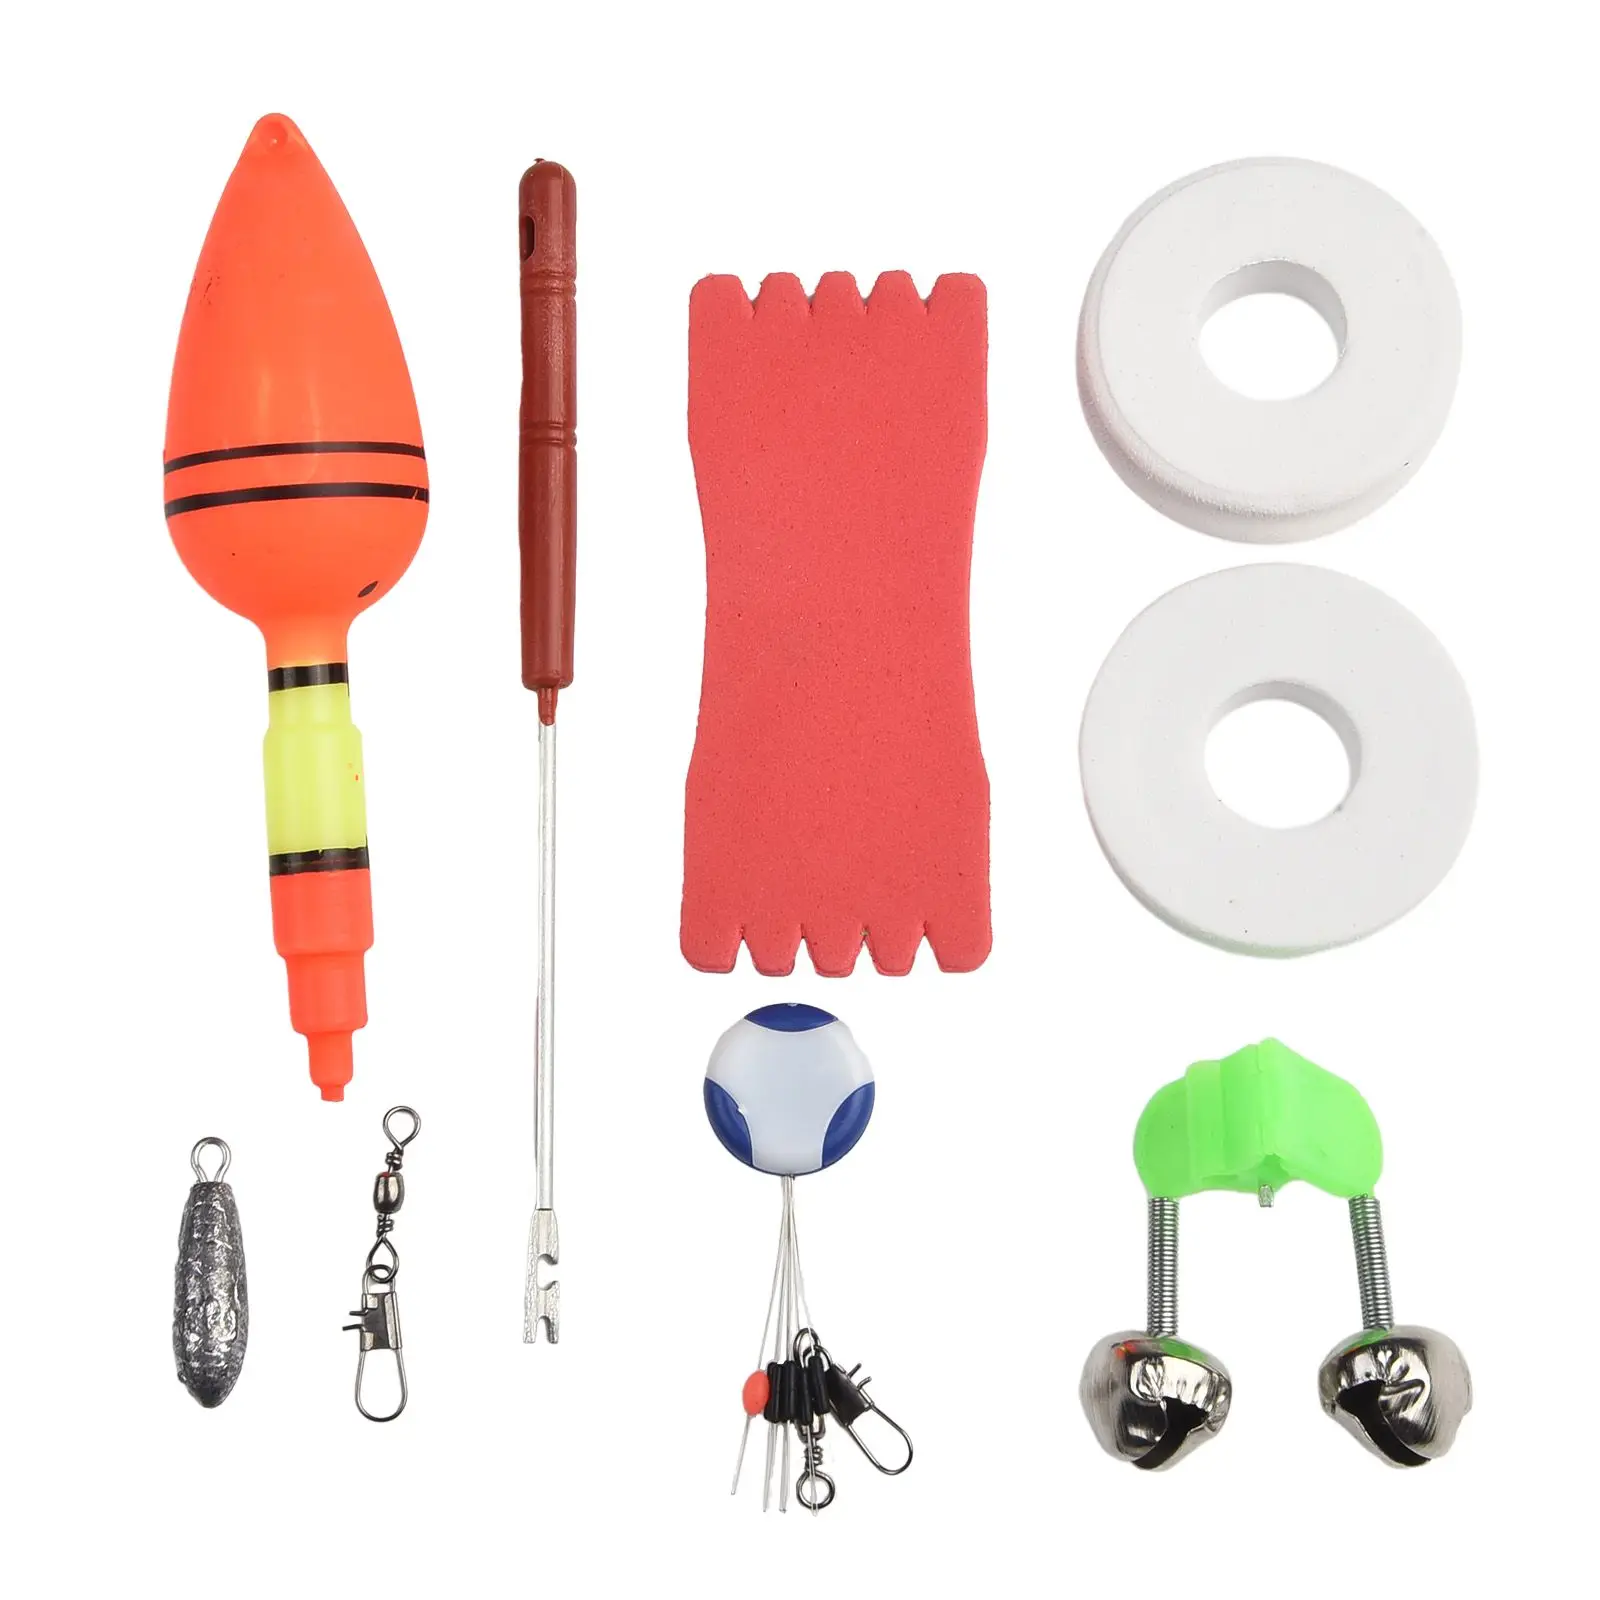 https://ae01.alicdn.com/kf/Sa4e17630bb78444bb7c4050bca0c21bcr/Multifunctional-Fishing-Rod-Sets-1-8M-Fishing-Rods-Reels-Tackle-Sets-5-2-1-Fishing-Tackle.jpeg